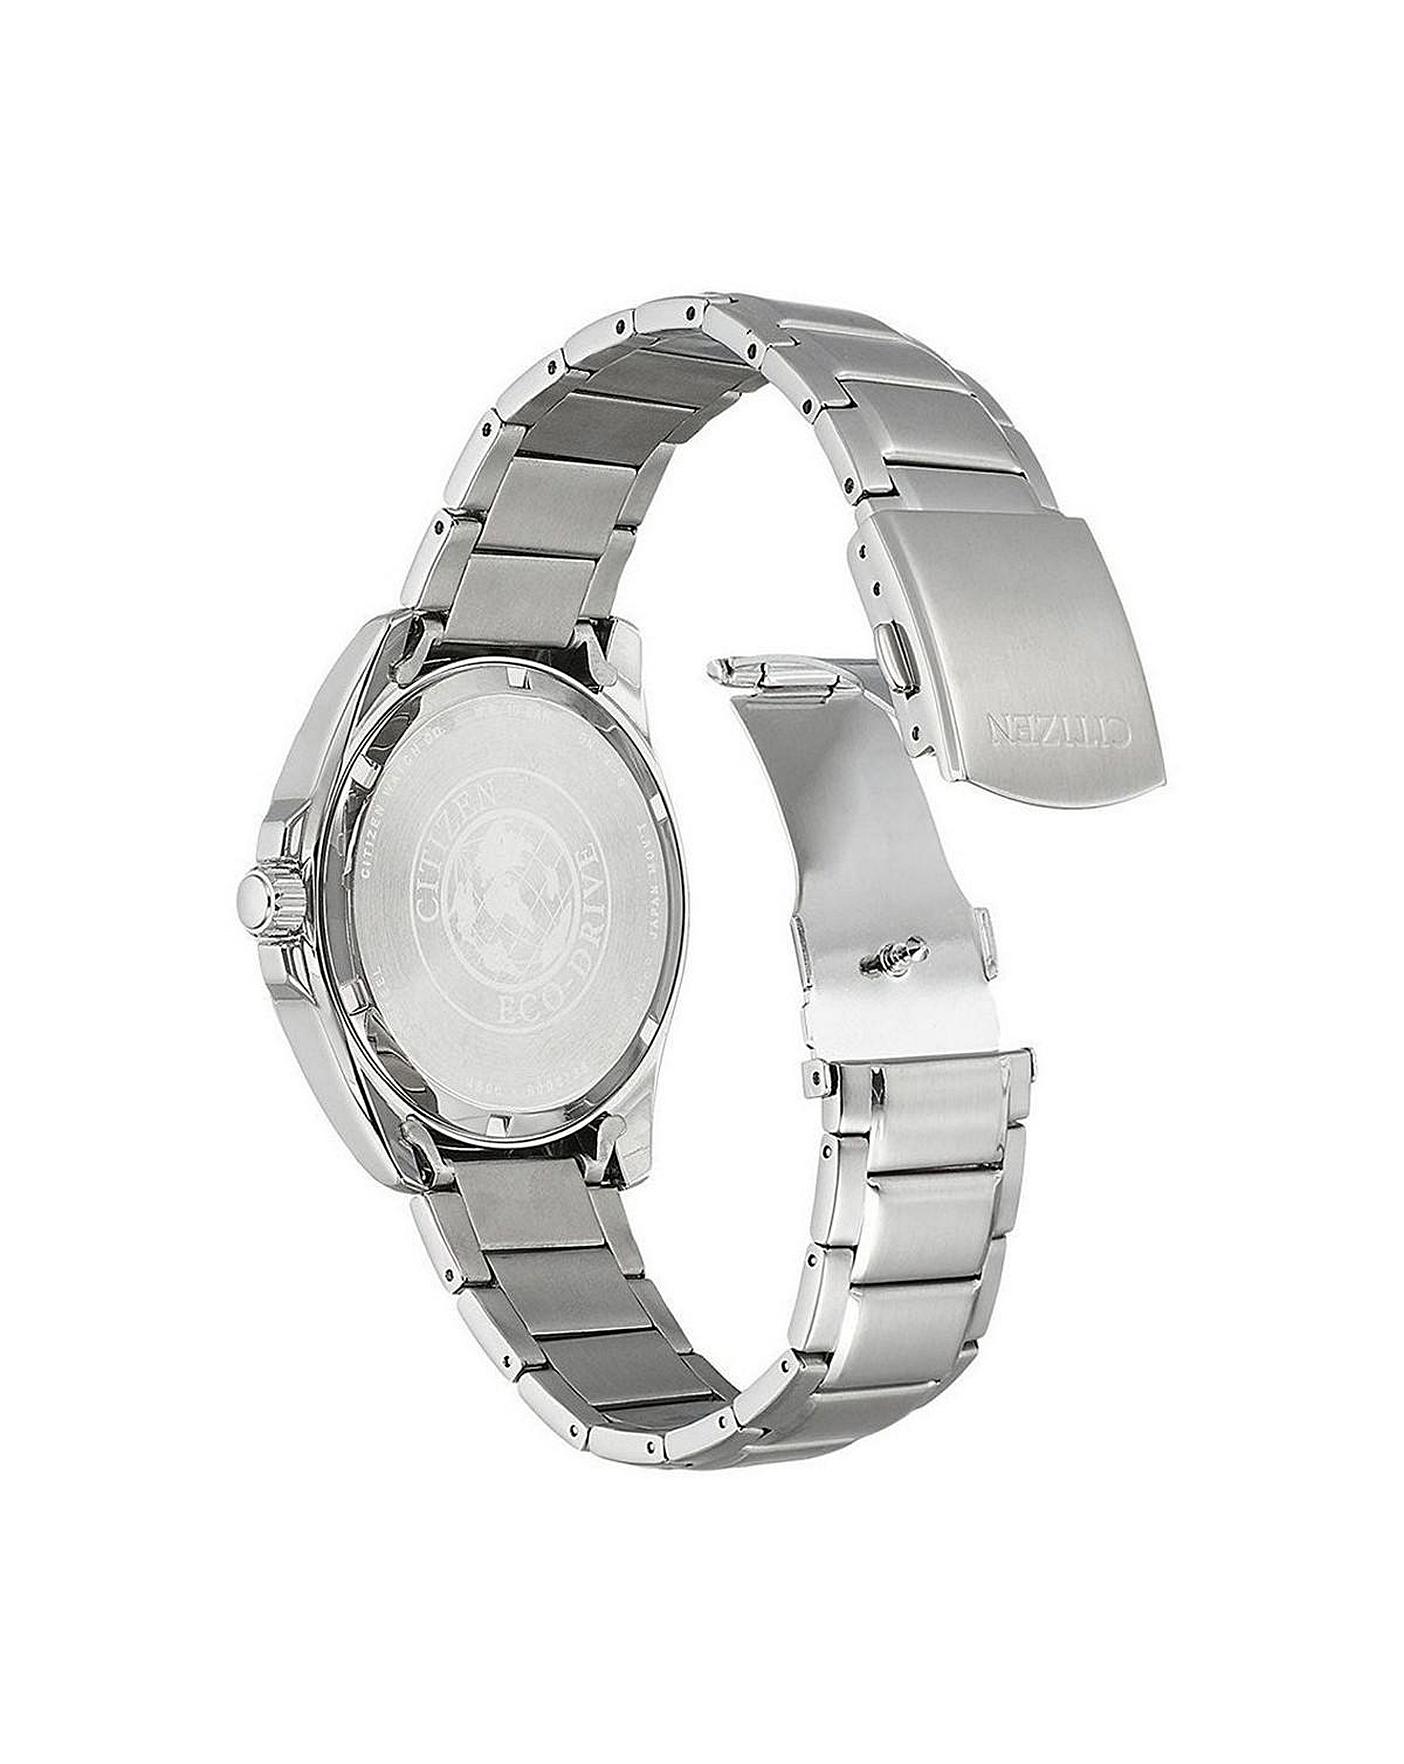 Citizen Promaster Diver Eco-Drive Bracelet Watch BN0191-55L